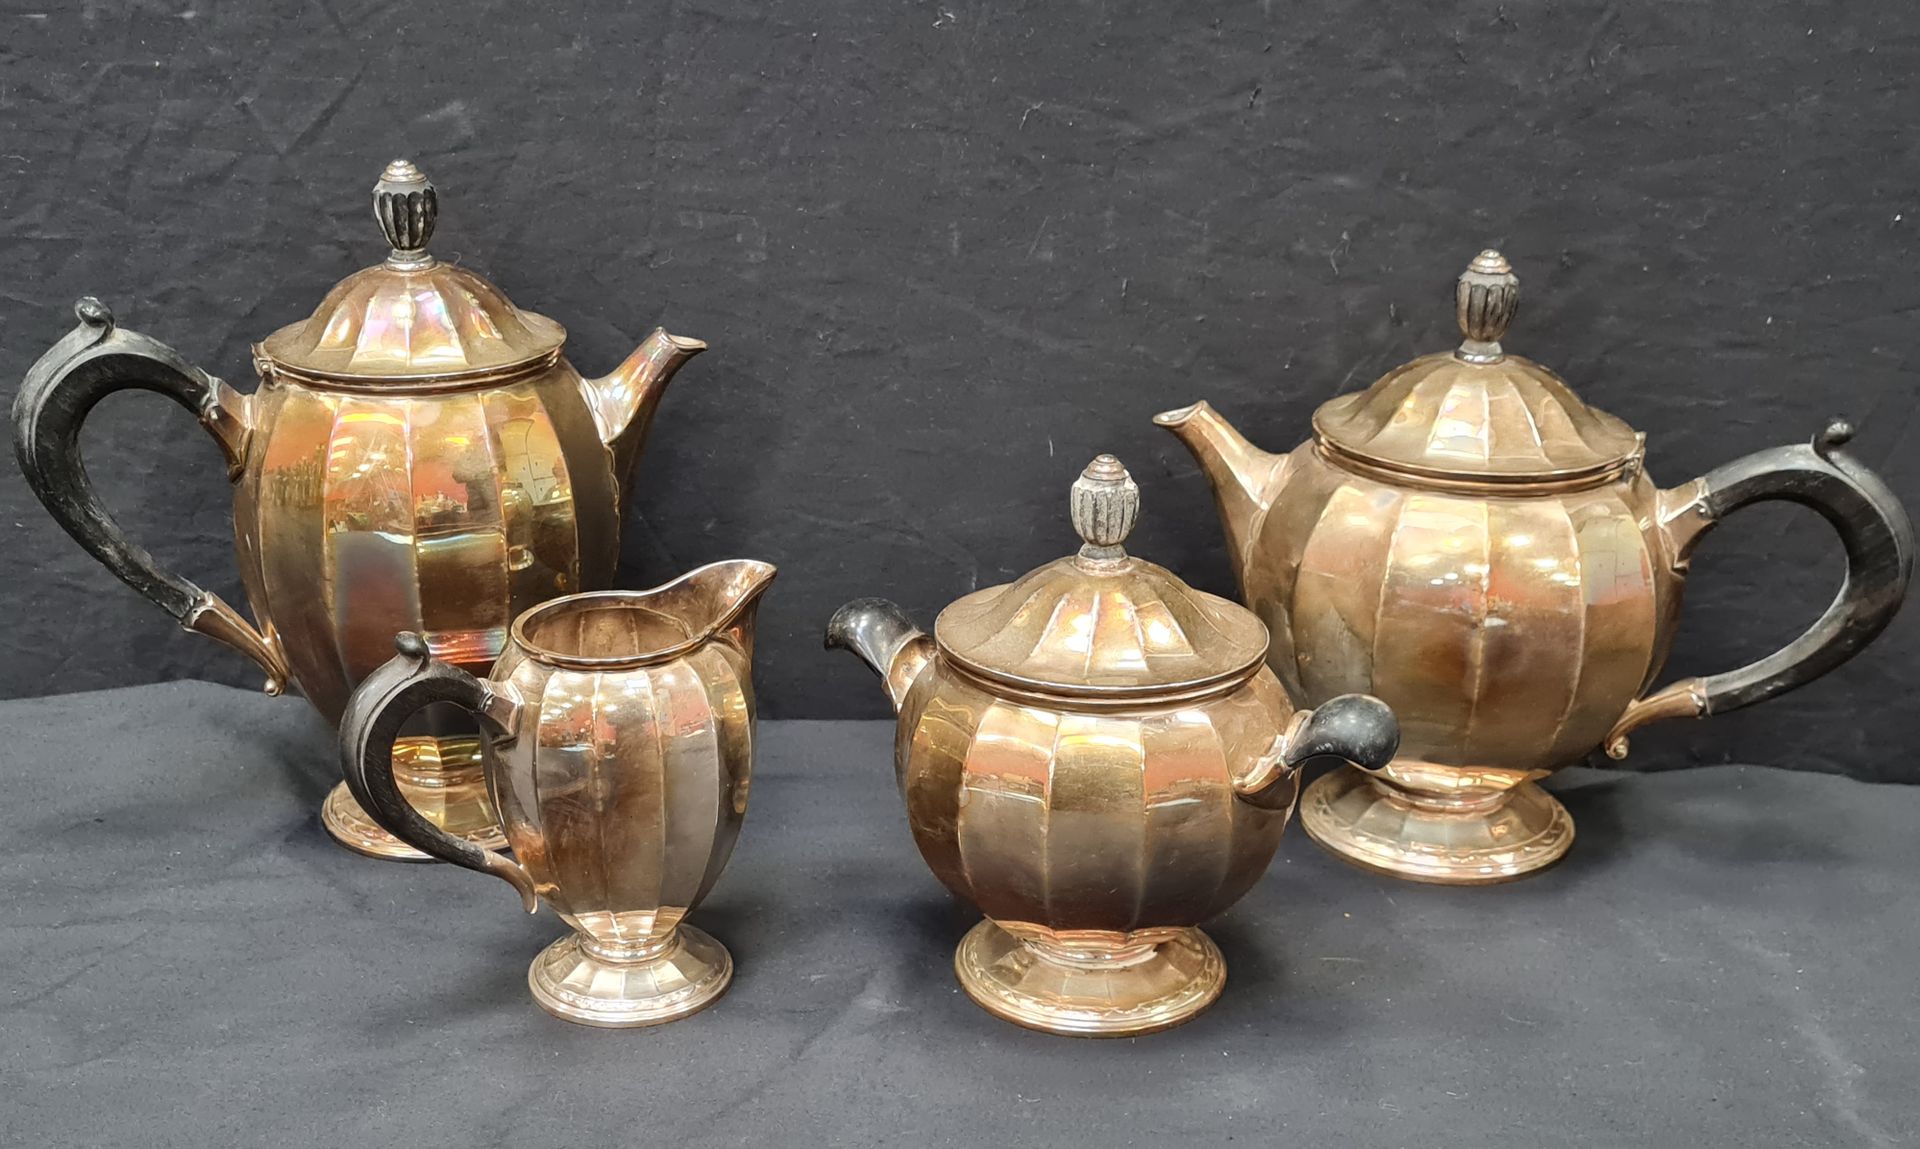 Null CHRISTOFLE，4件镀银茶具和咖啡具，罗纹装饰，包括。一个茶壶（19.5厘米），一个咖啡壶（22厘米），一个糖碗和一个牛奶壶。